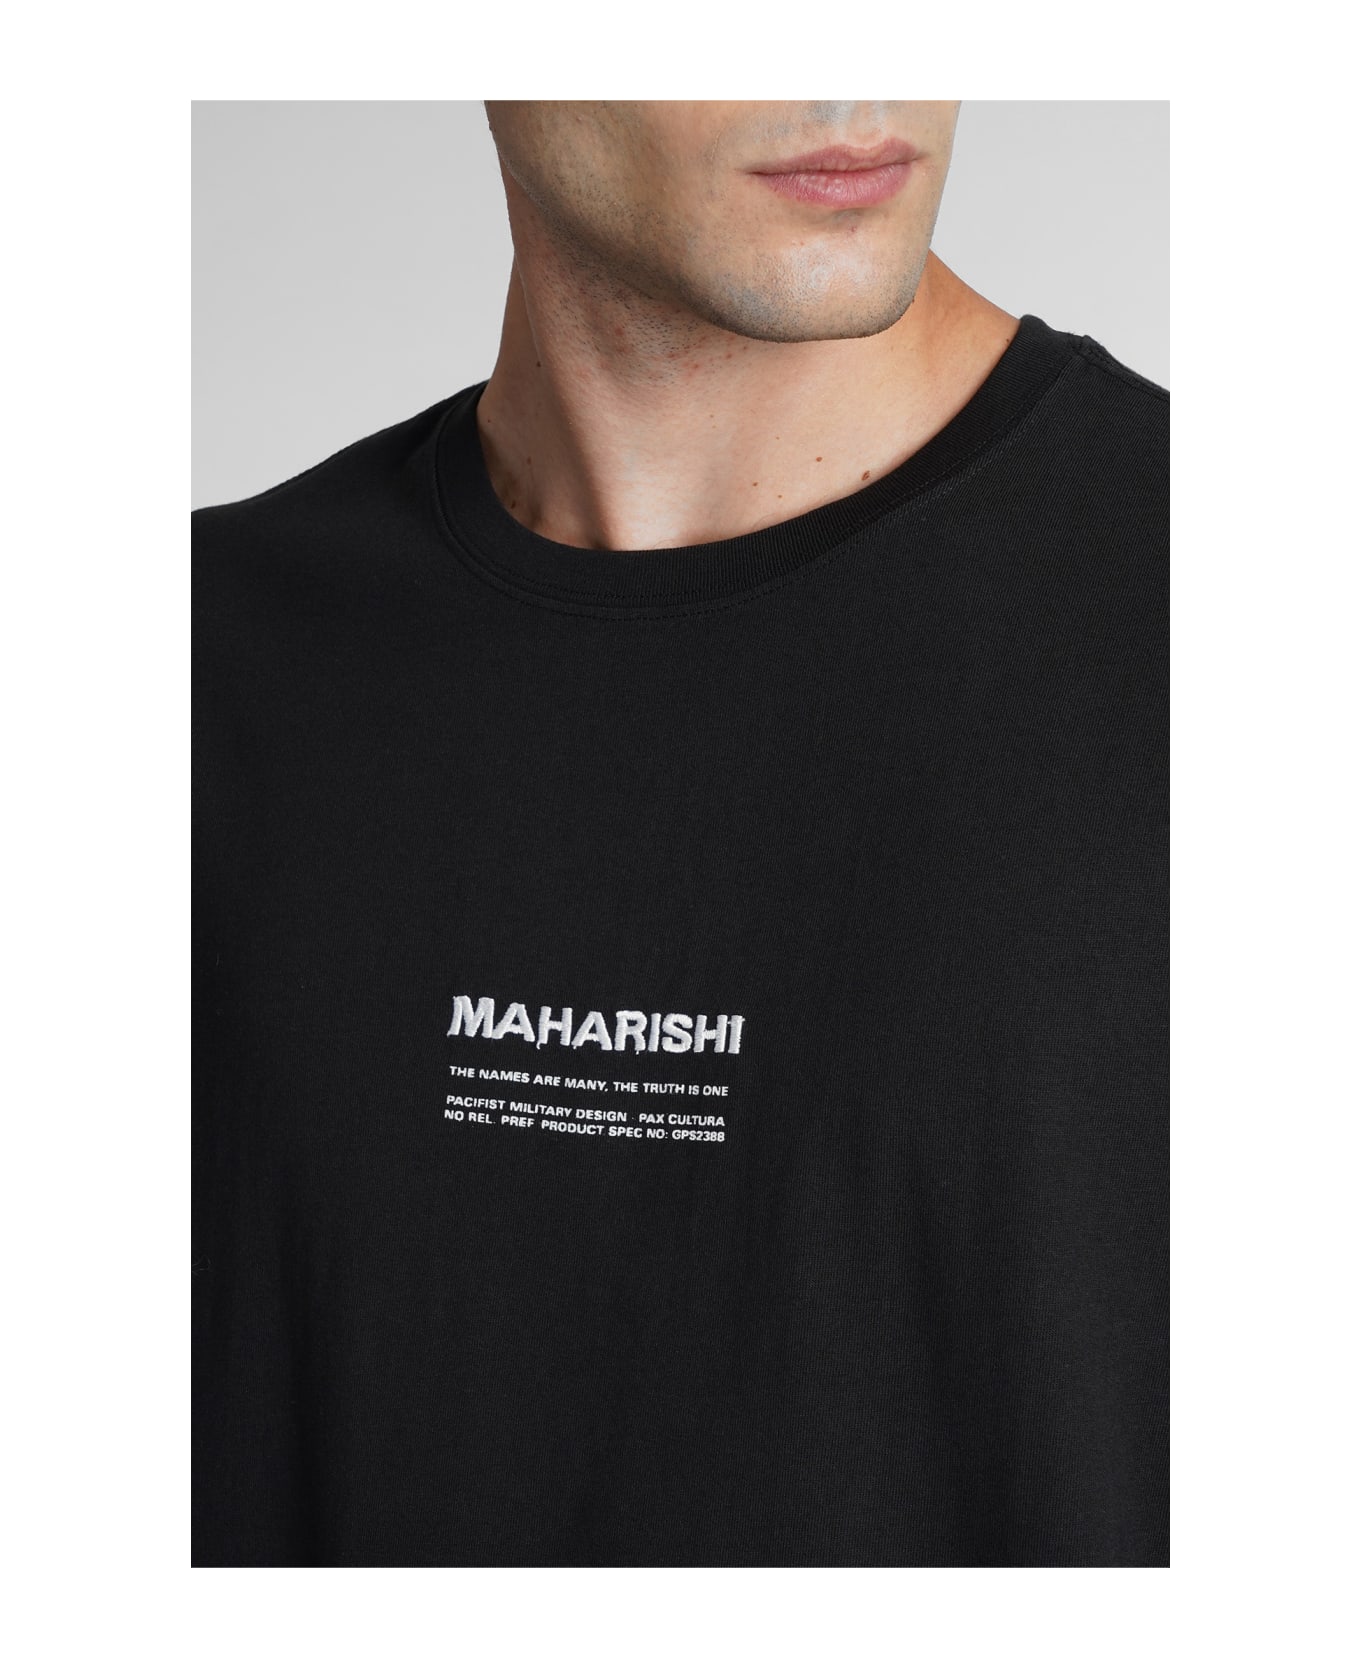 Maharishi T-shirt In Black Cotton - black